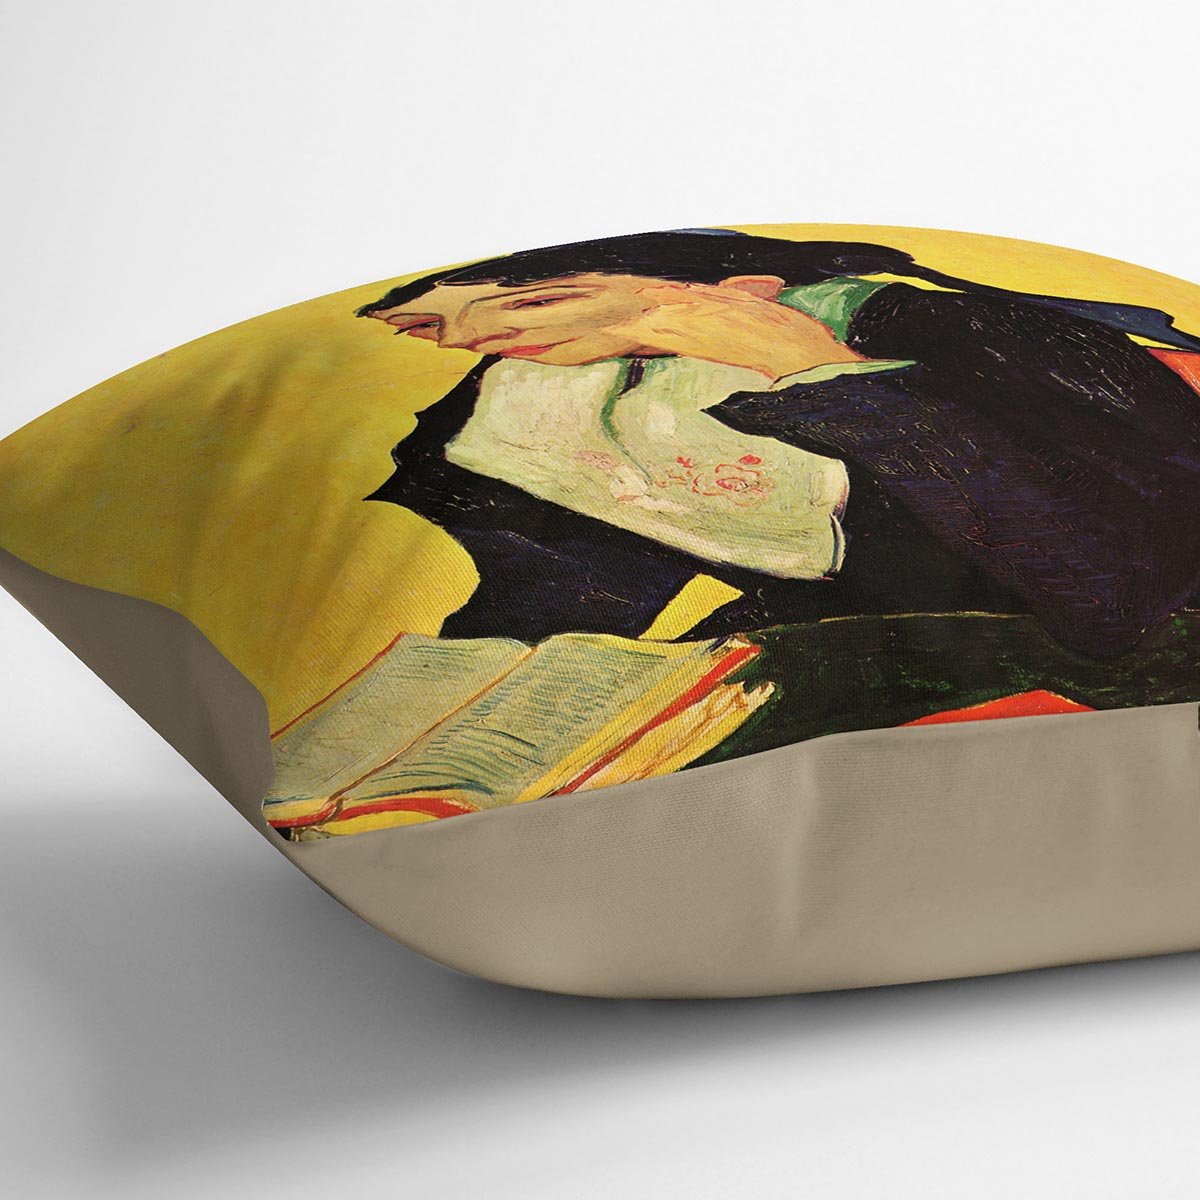 Arlesienne by Van Gogh Throw Pillow